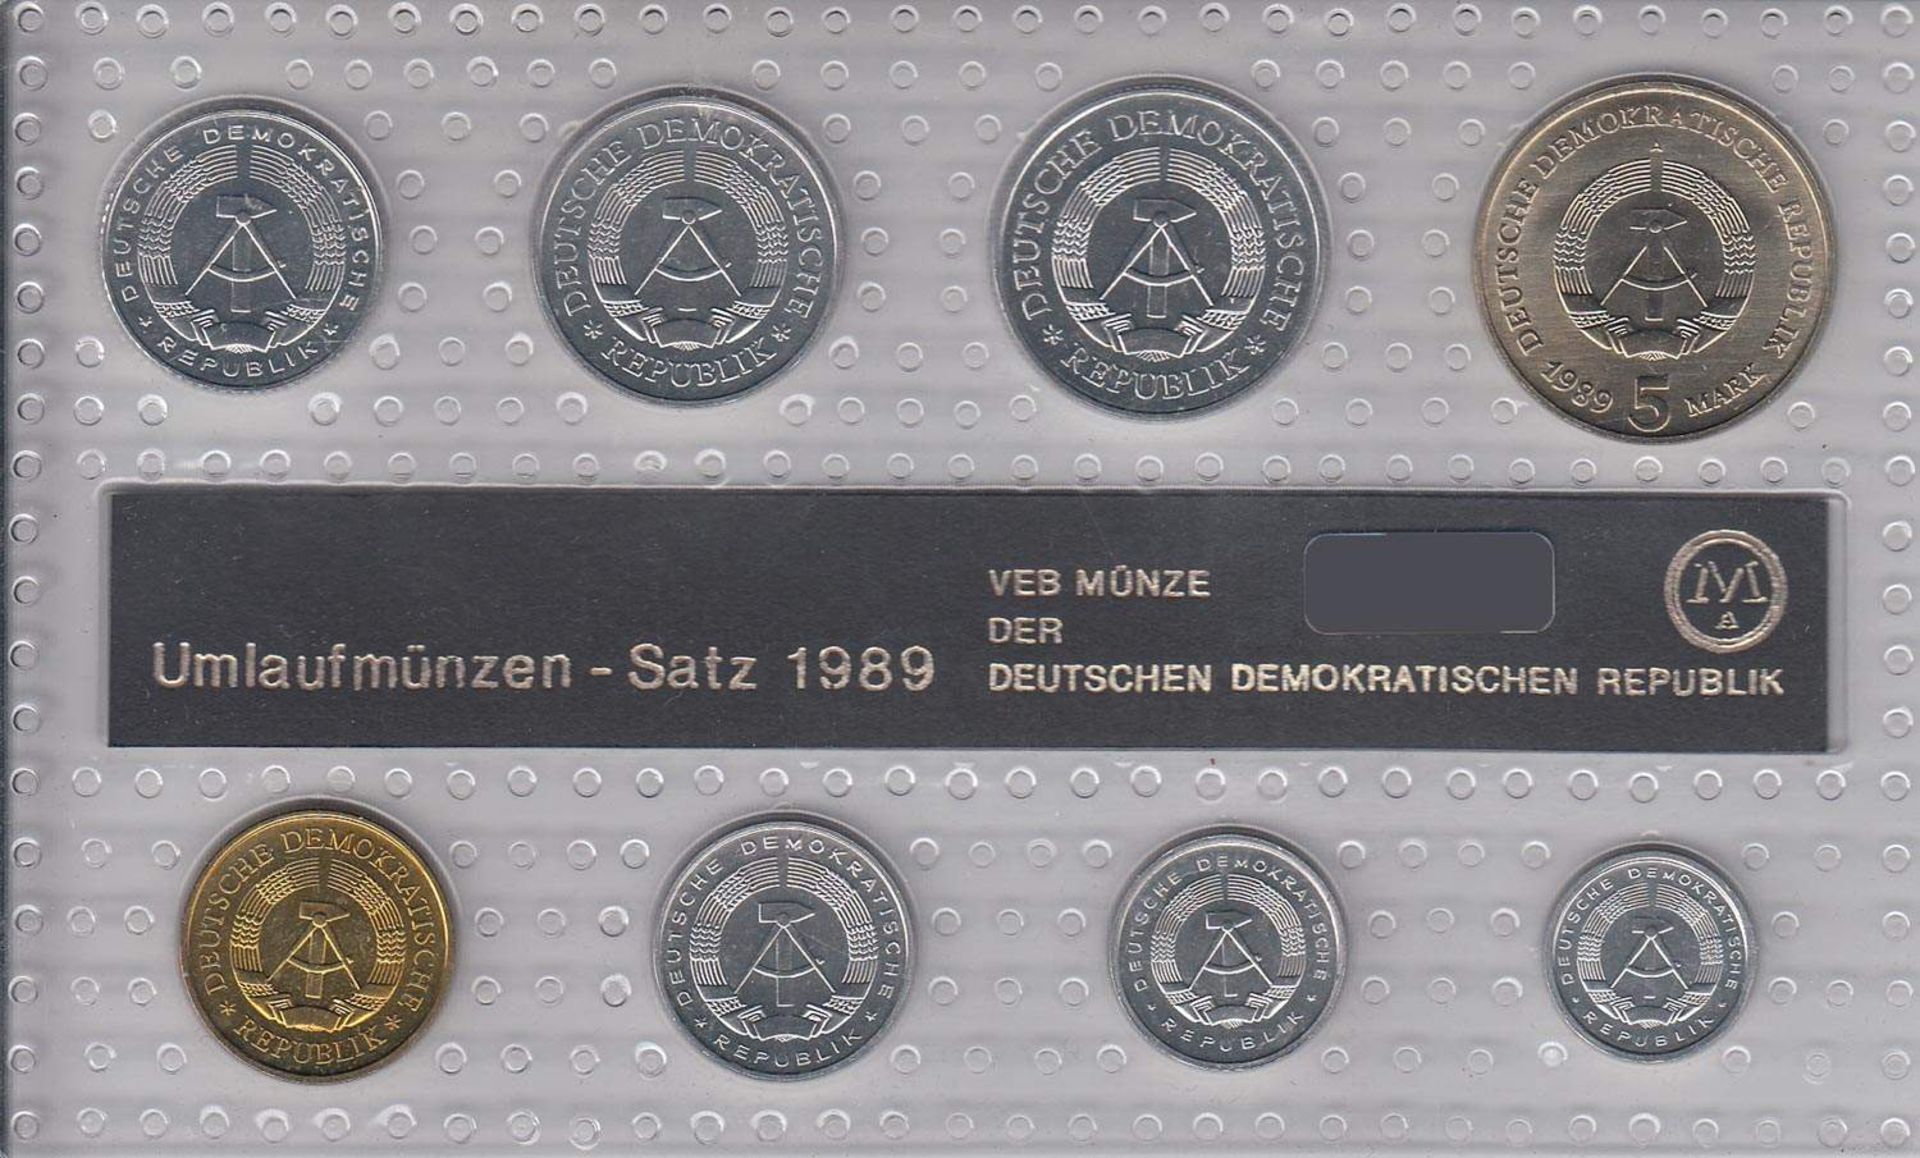 MünzsatzDDR 1989, 5 Mark - 1 Pfennig, stgl.Aufrufpreis: 5 EUR - Image 2 of 2